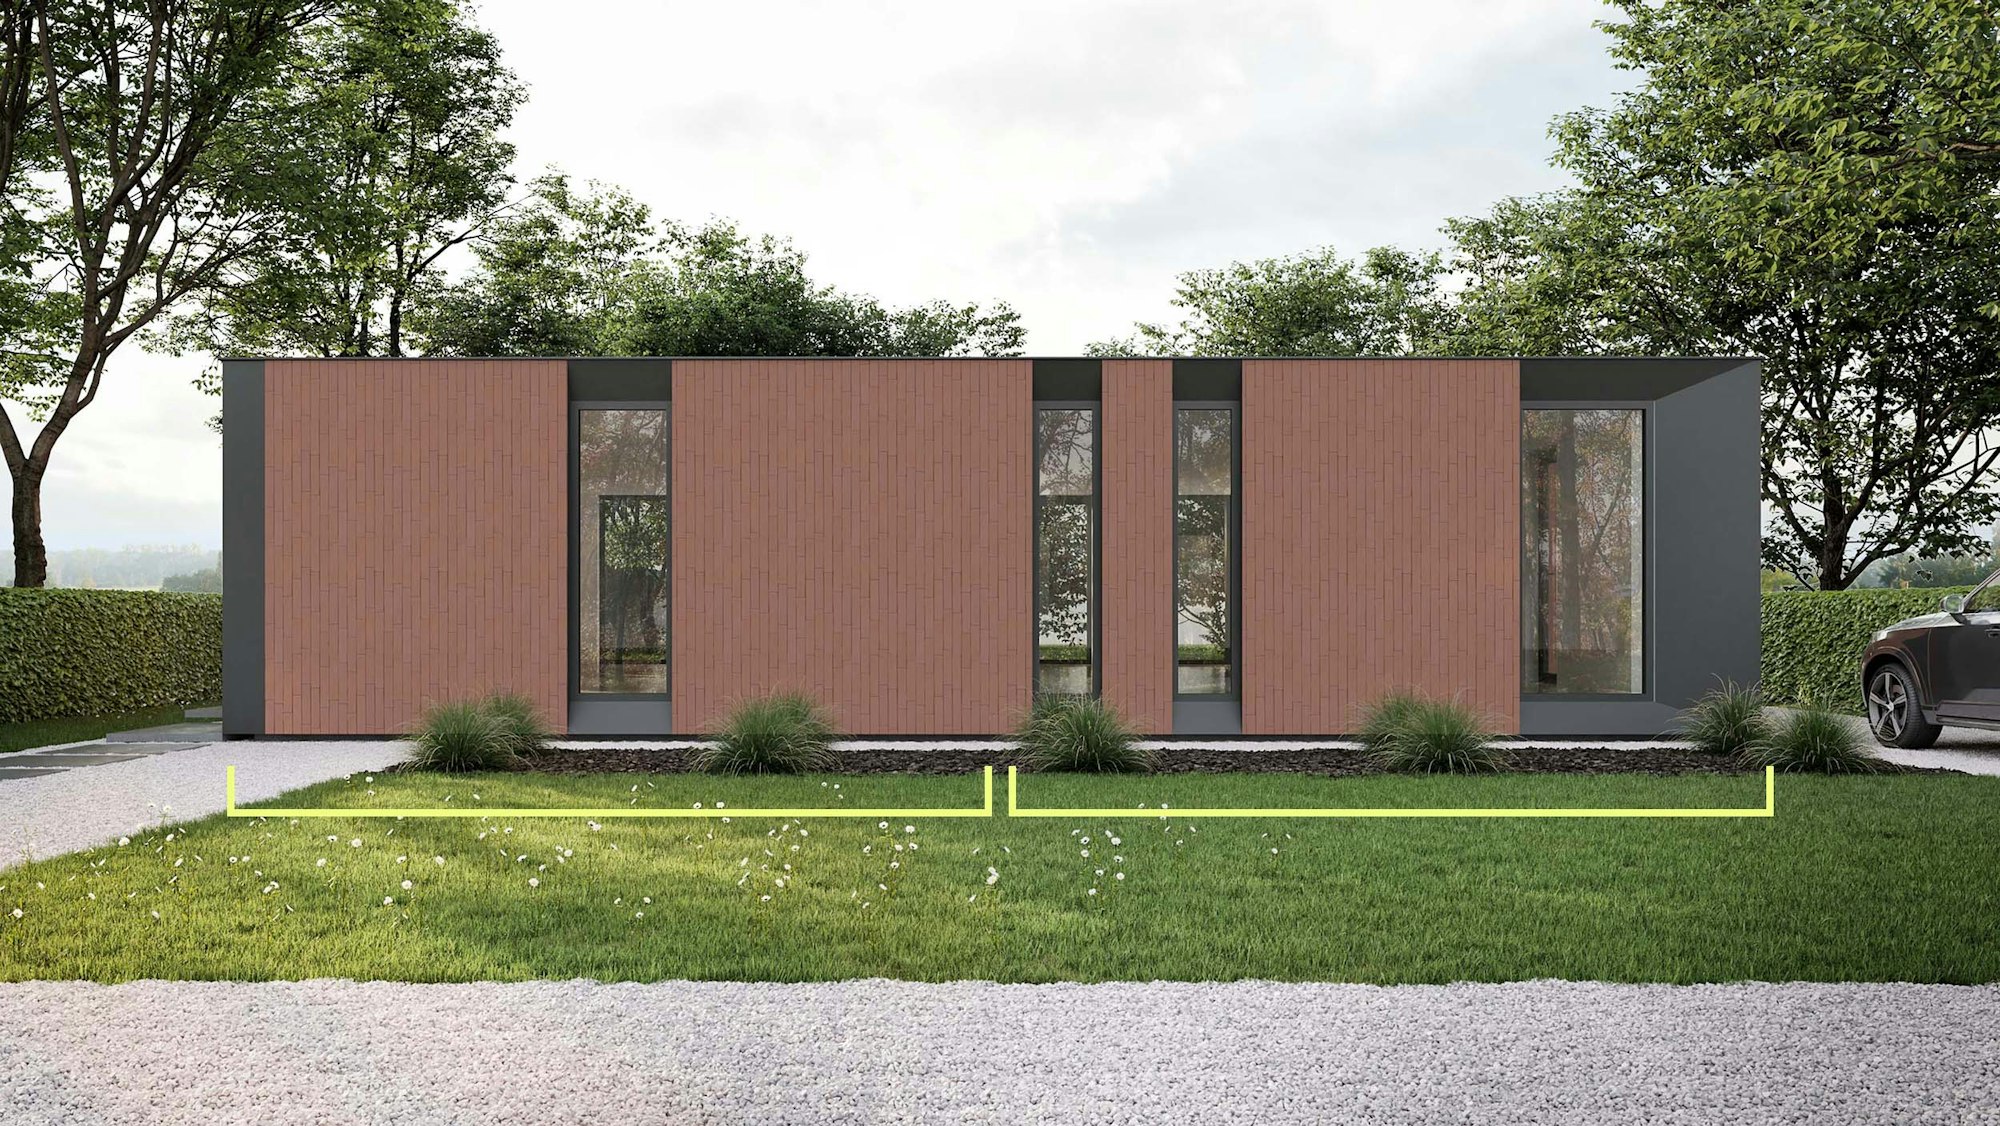 Skilpod #100 — houtskeletbouw bungalow woning met 2 slaapkamers, modern design met rode steen